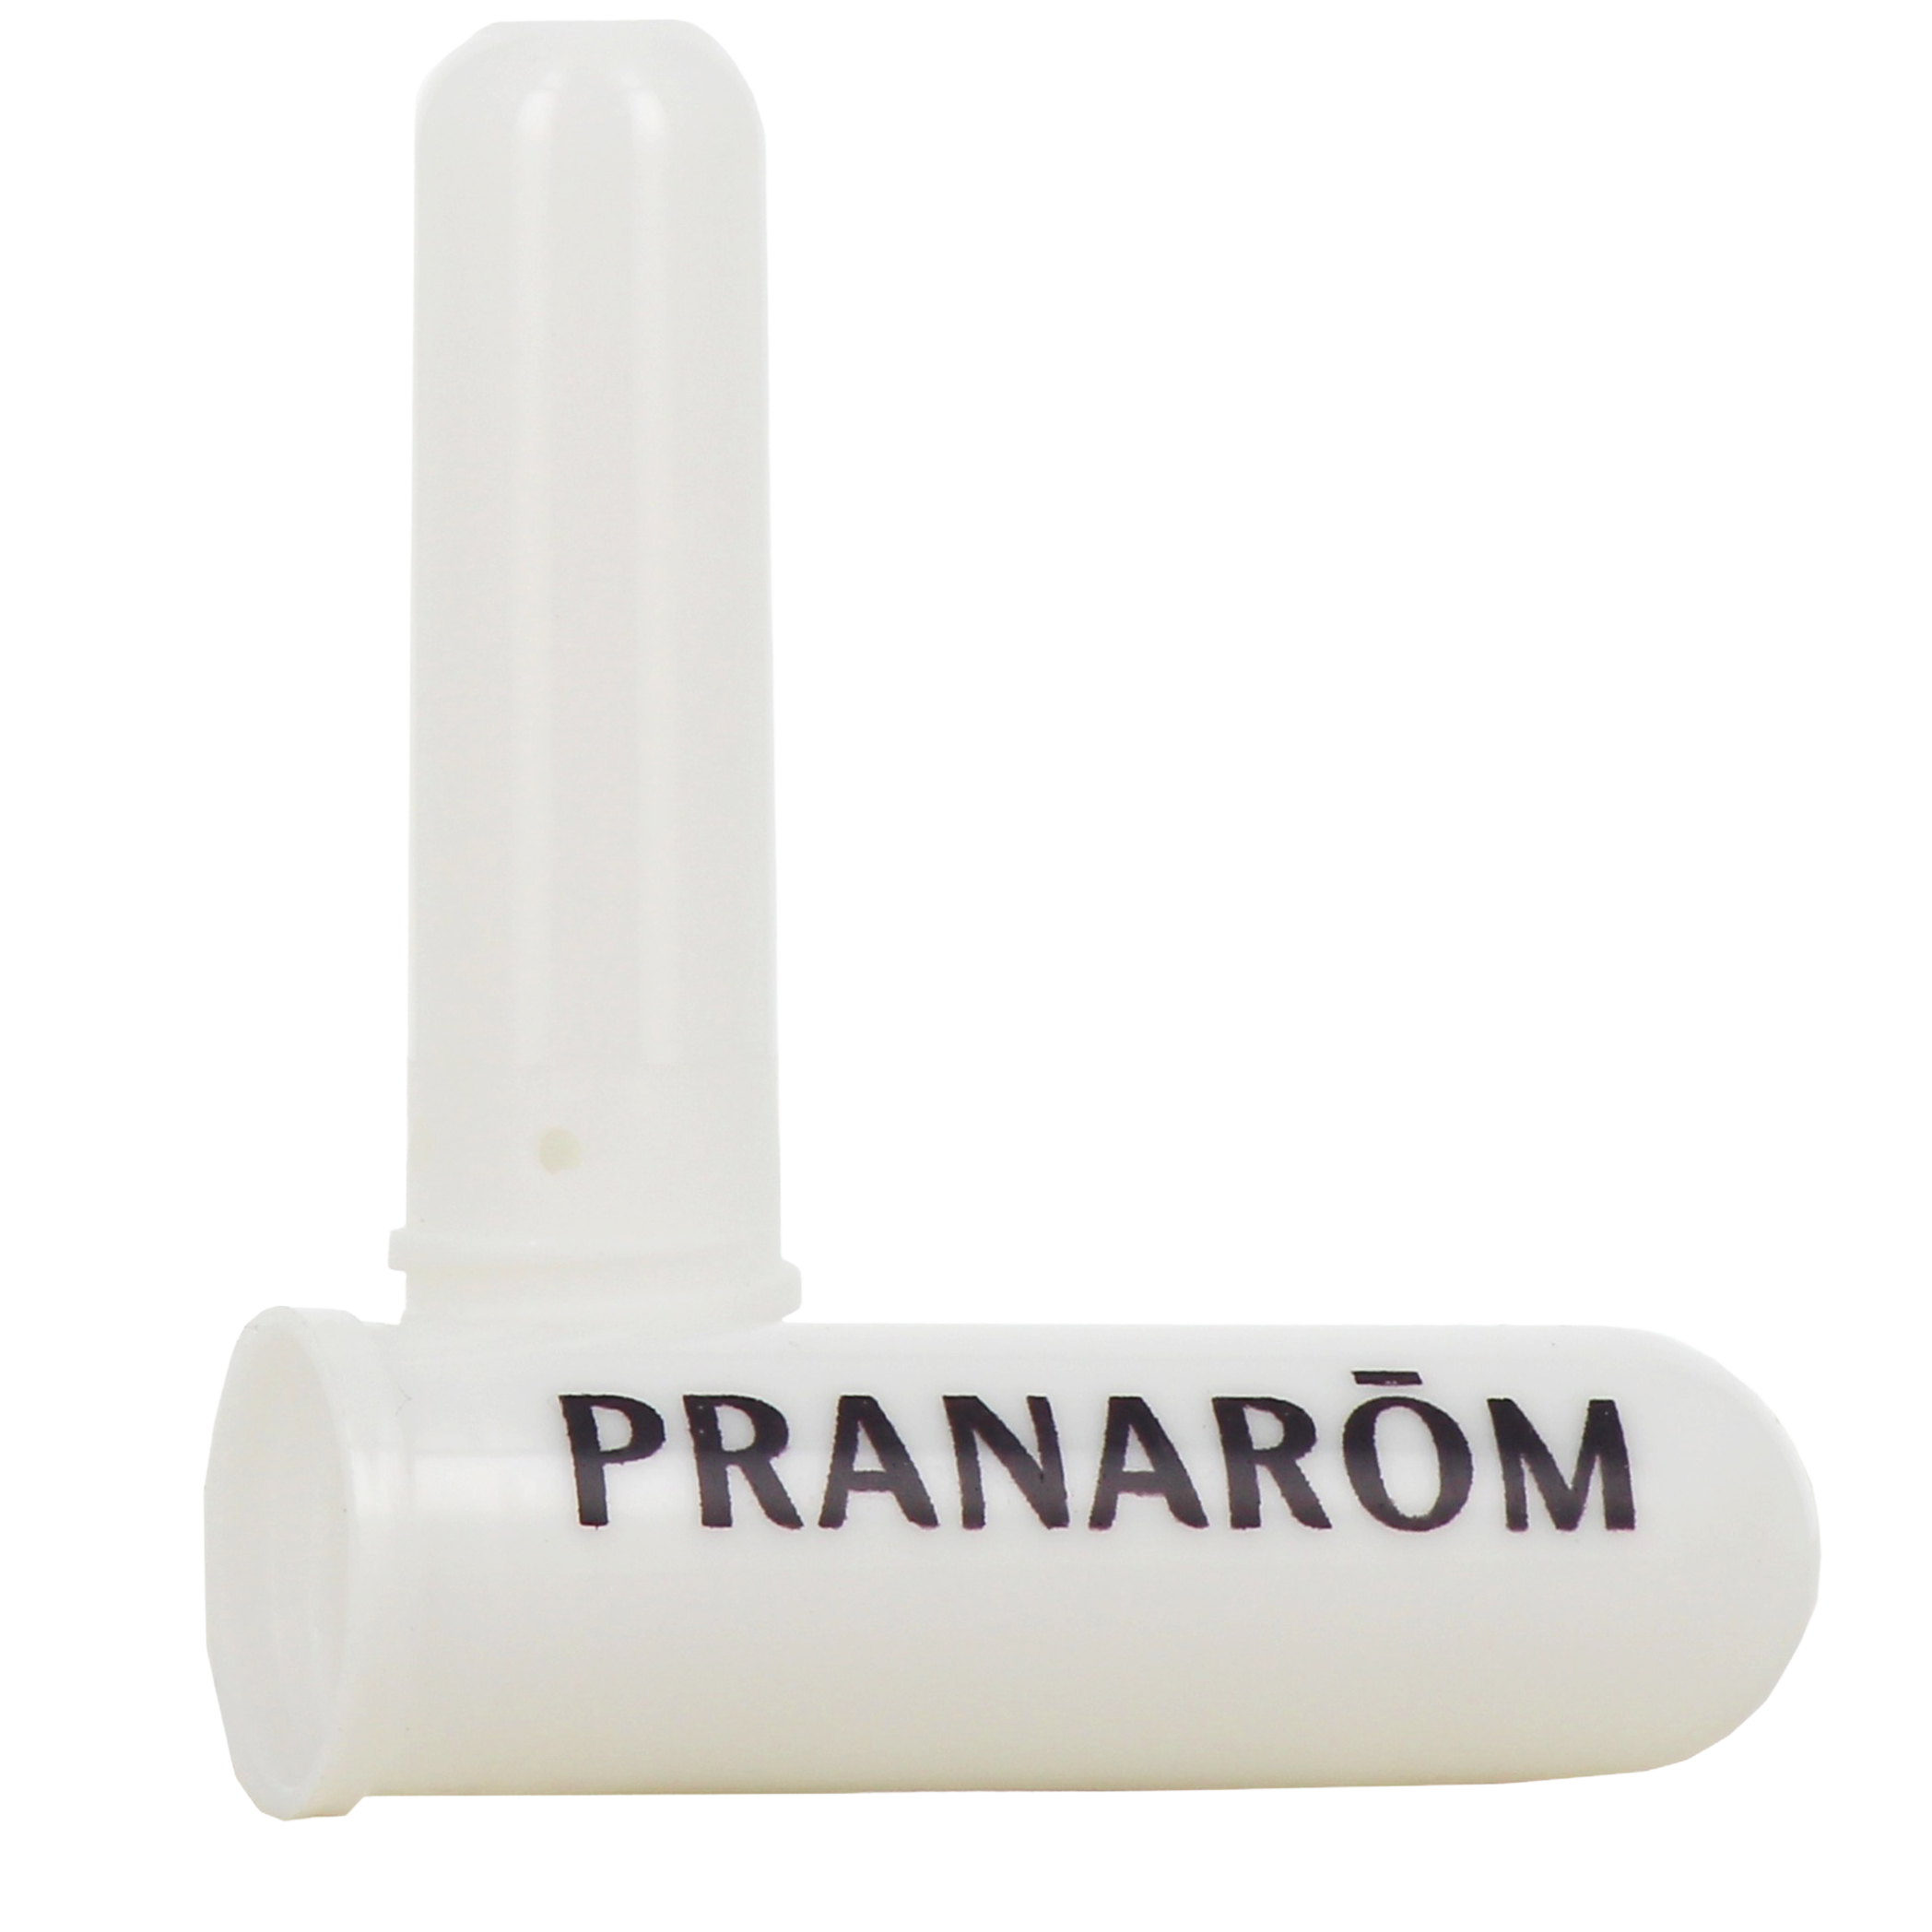 Pranastick Nez (solution bio pranarom 30 ml + 1 stick inhalateur) de Aroma  Essentiel pour l'emporter partout en cas de besoin